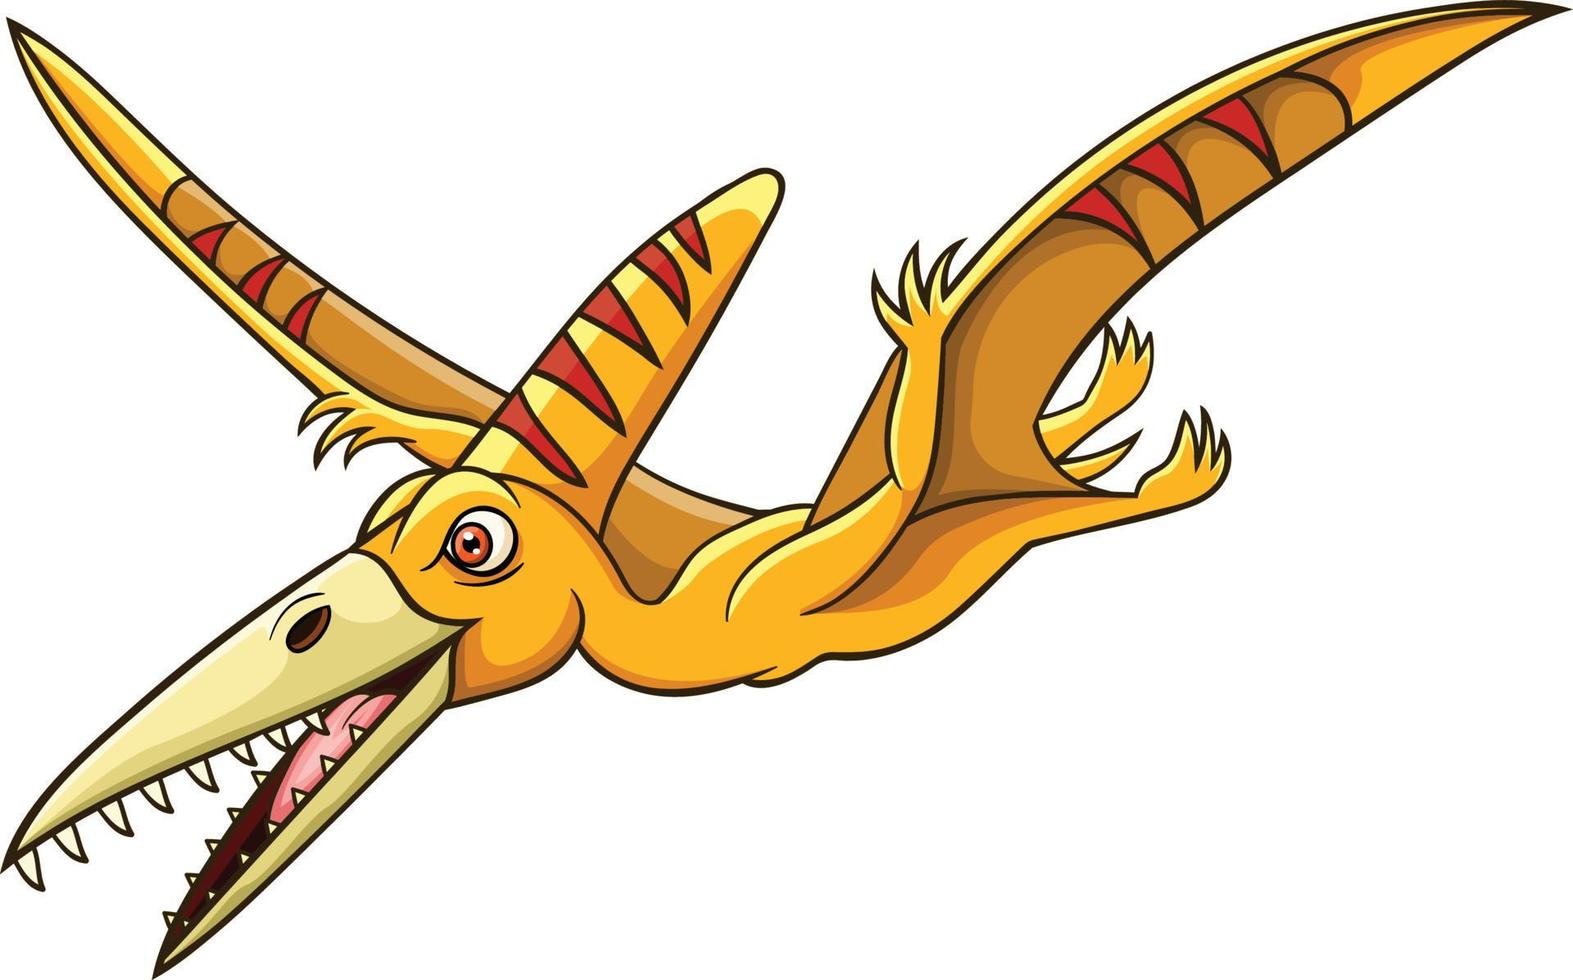 tecknade pterosaurier flyger på vit bakgrund vektor